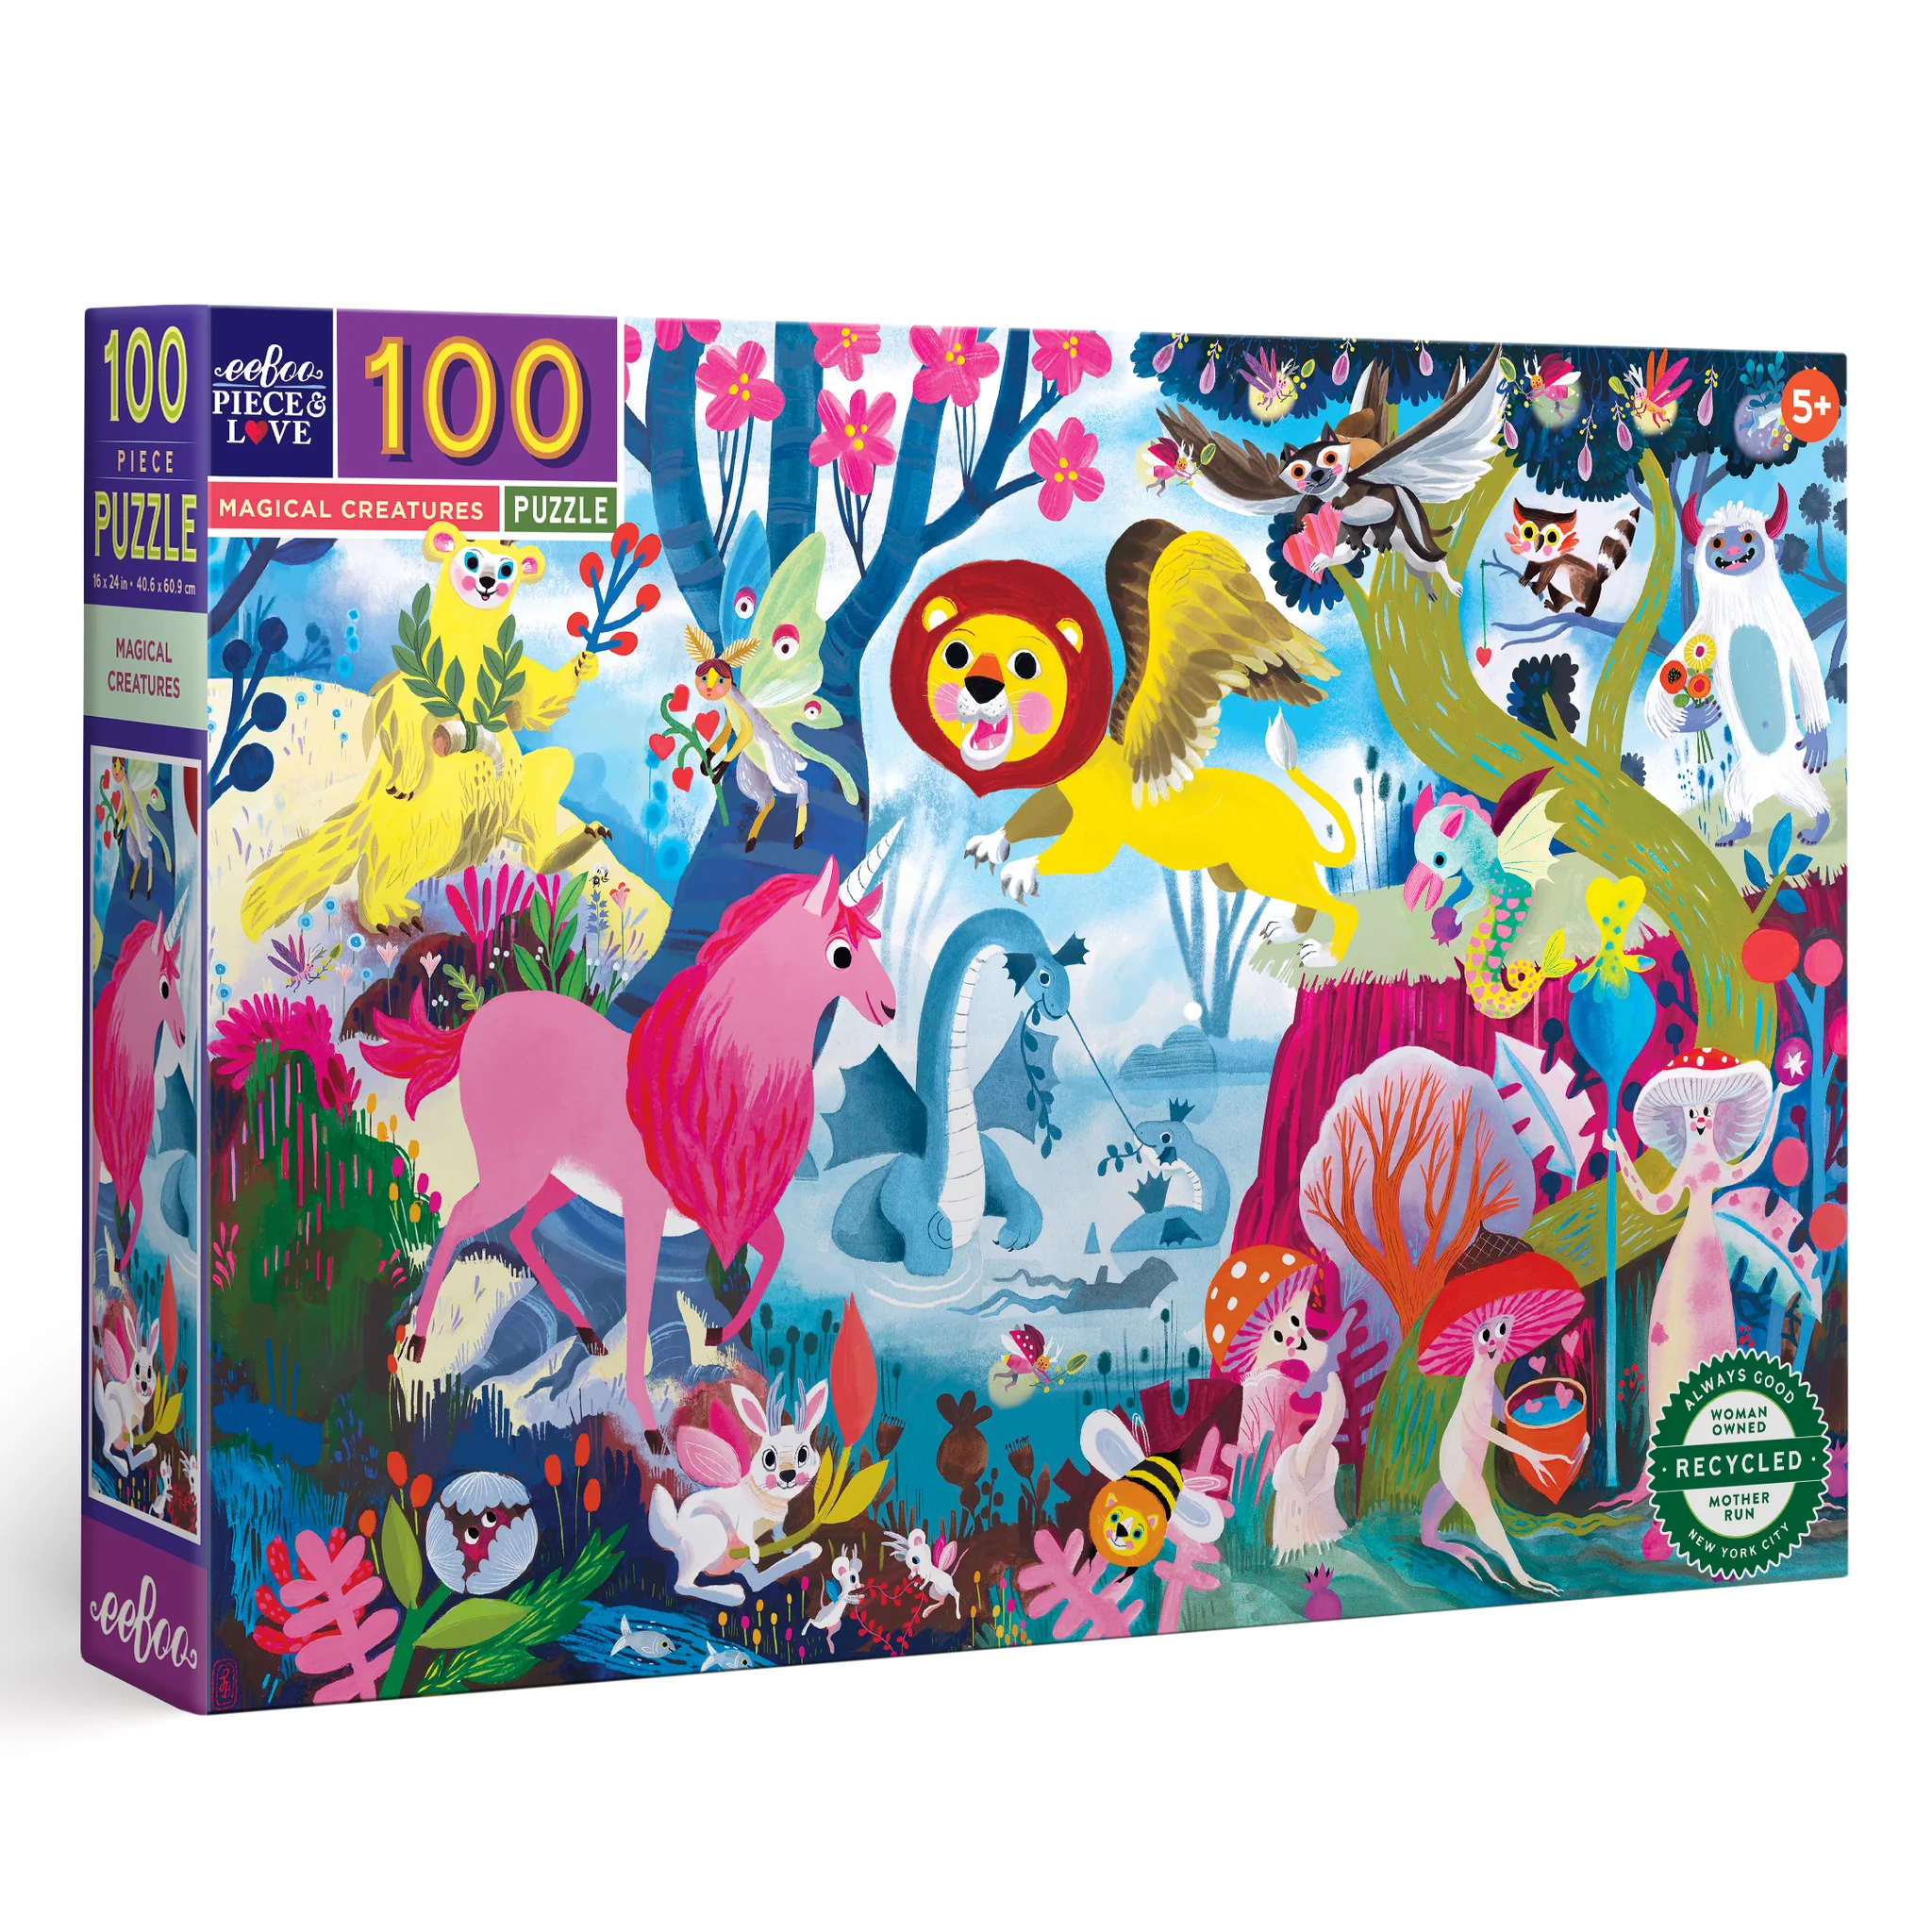 Puzzle Magical Creatures 100 piezas 1